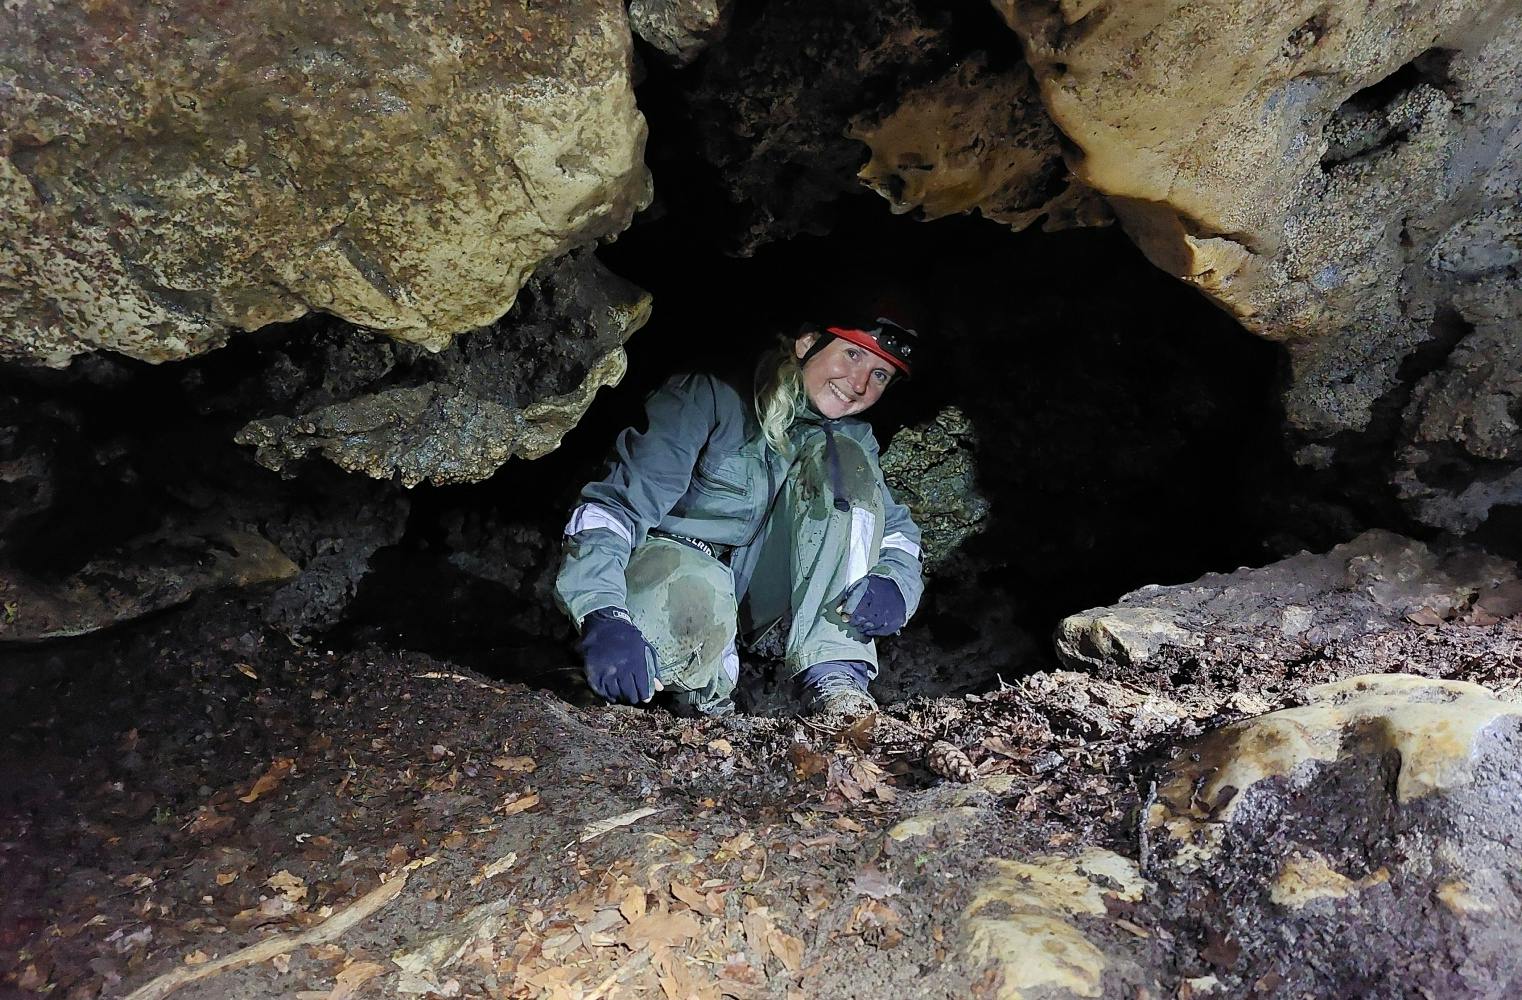 Höhlen-Abenteuer | 4 Stunden geführte Höhlenexkursion